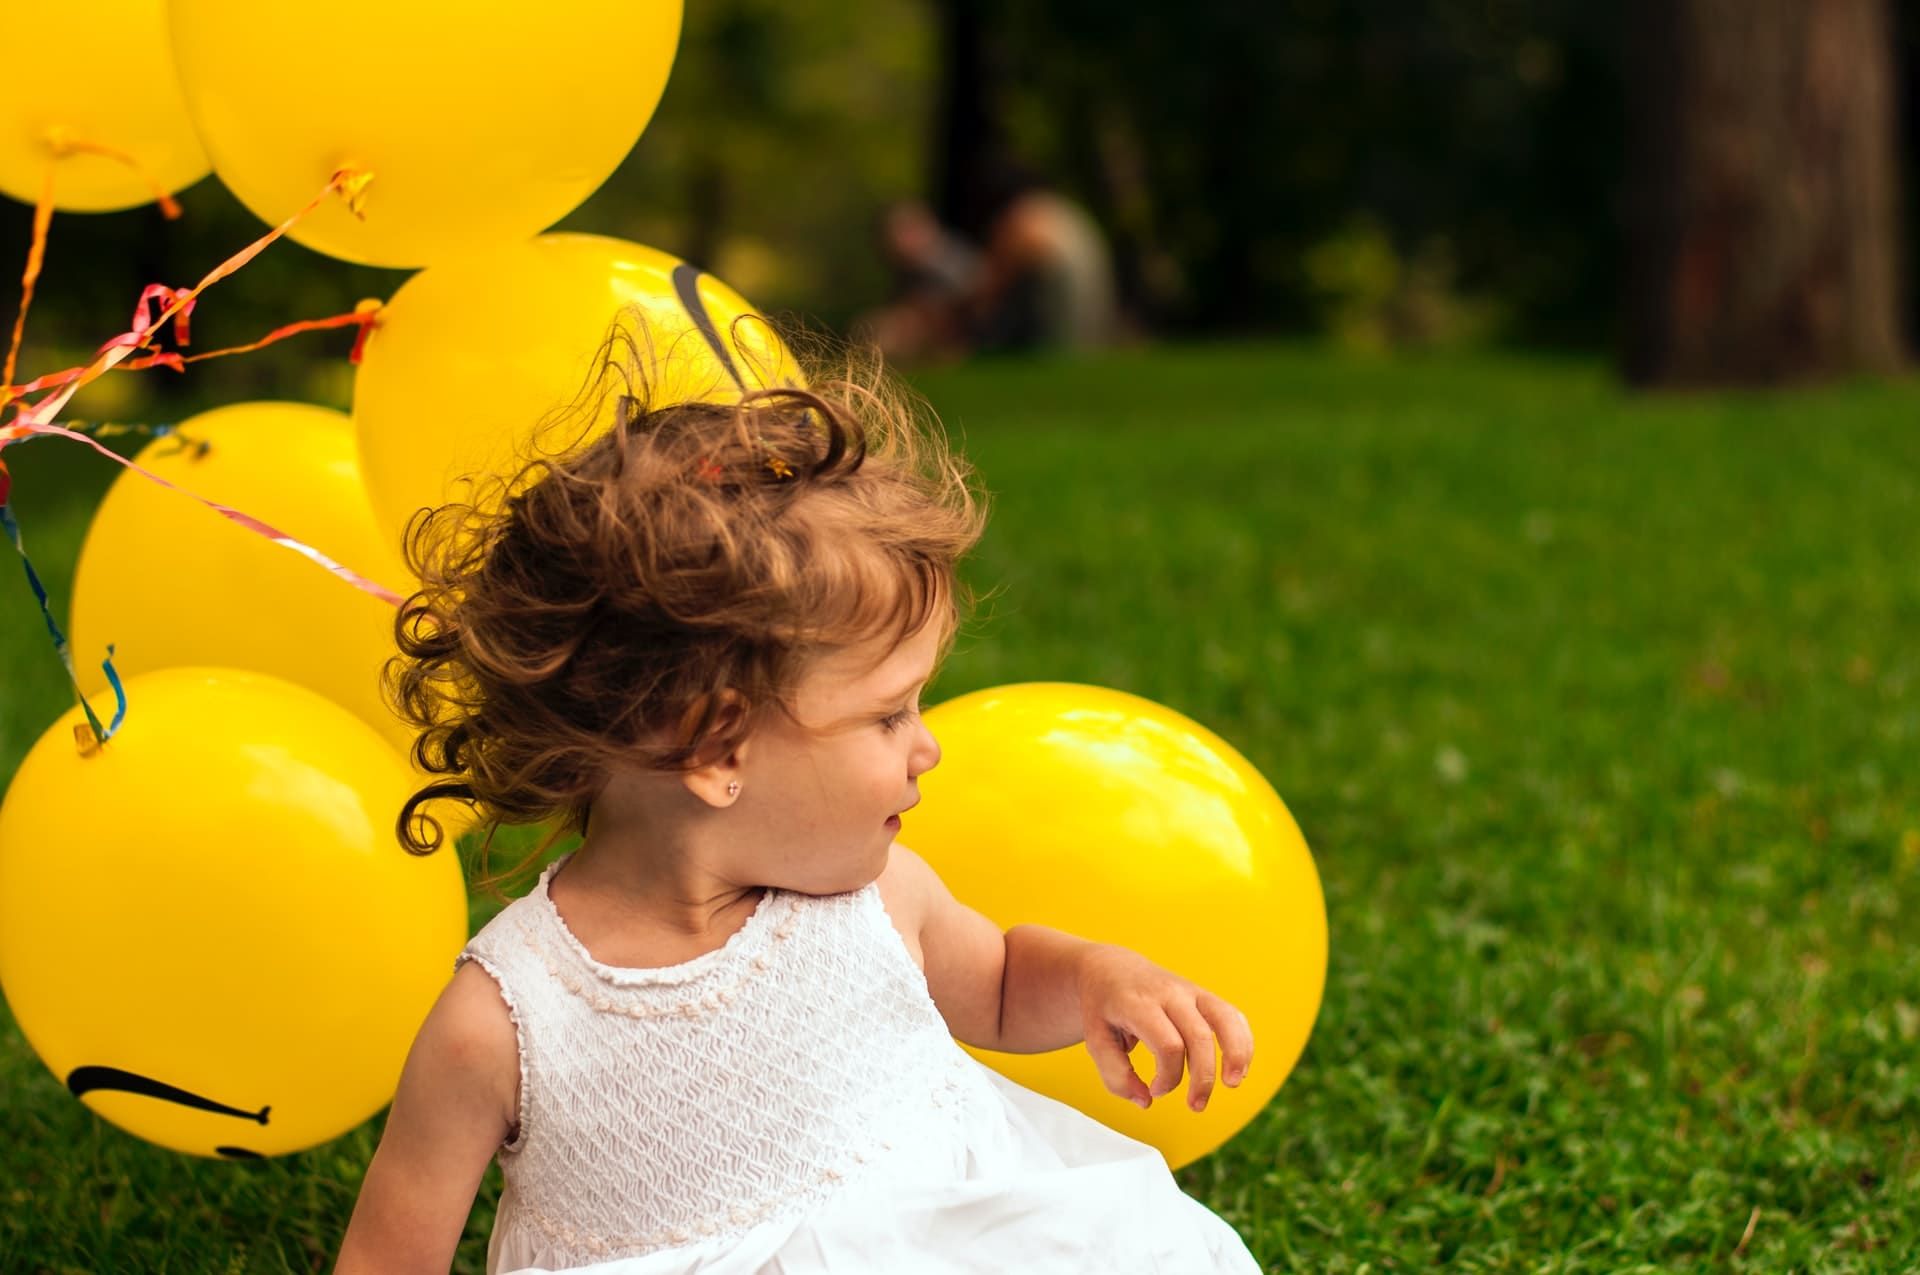 Dziecko z balonami